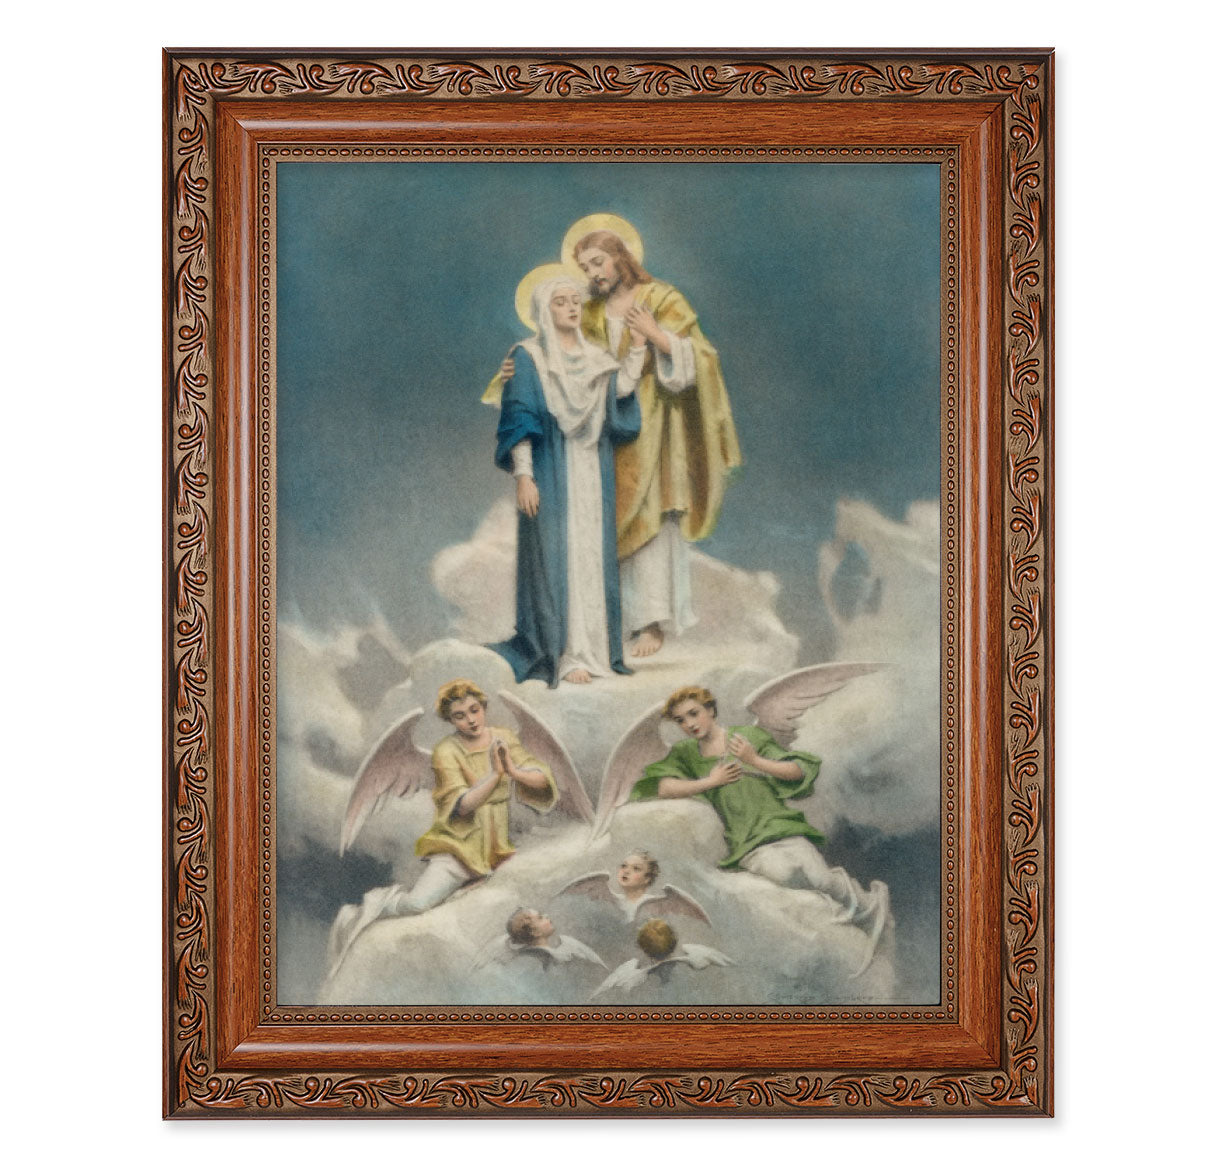 Jesus and Mary Mahogany Finished Framed Art